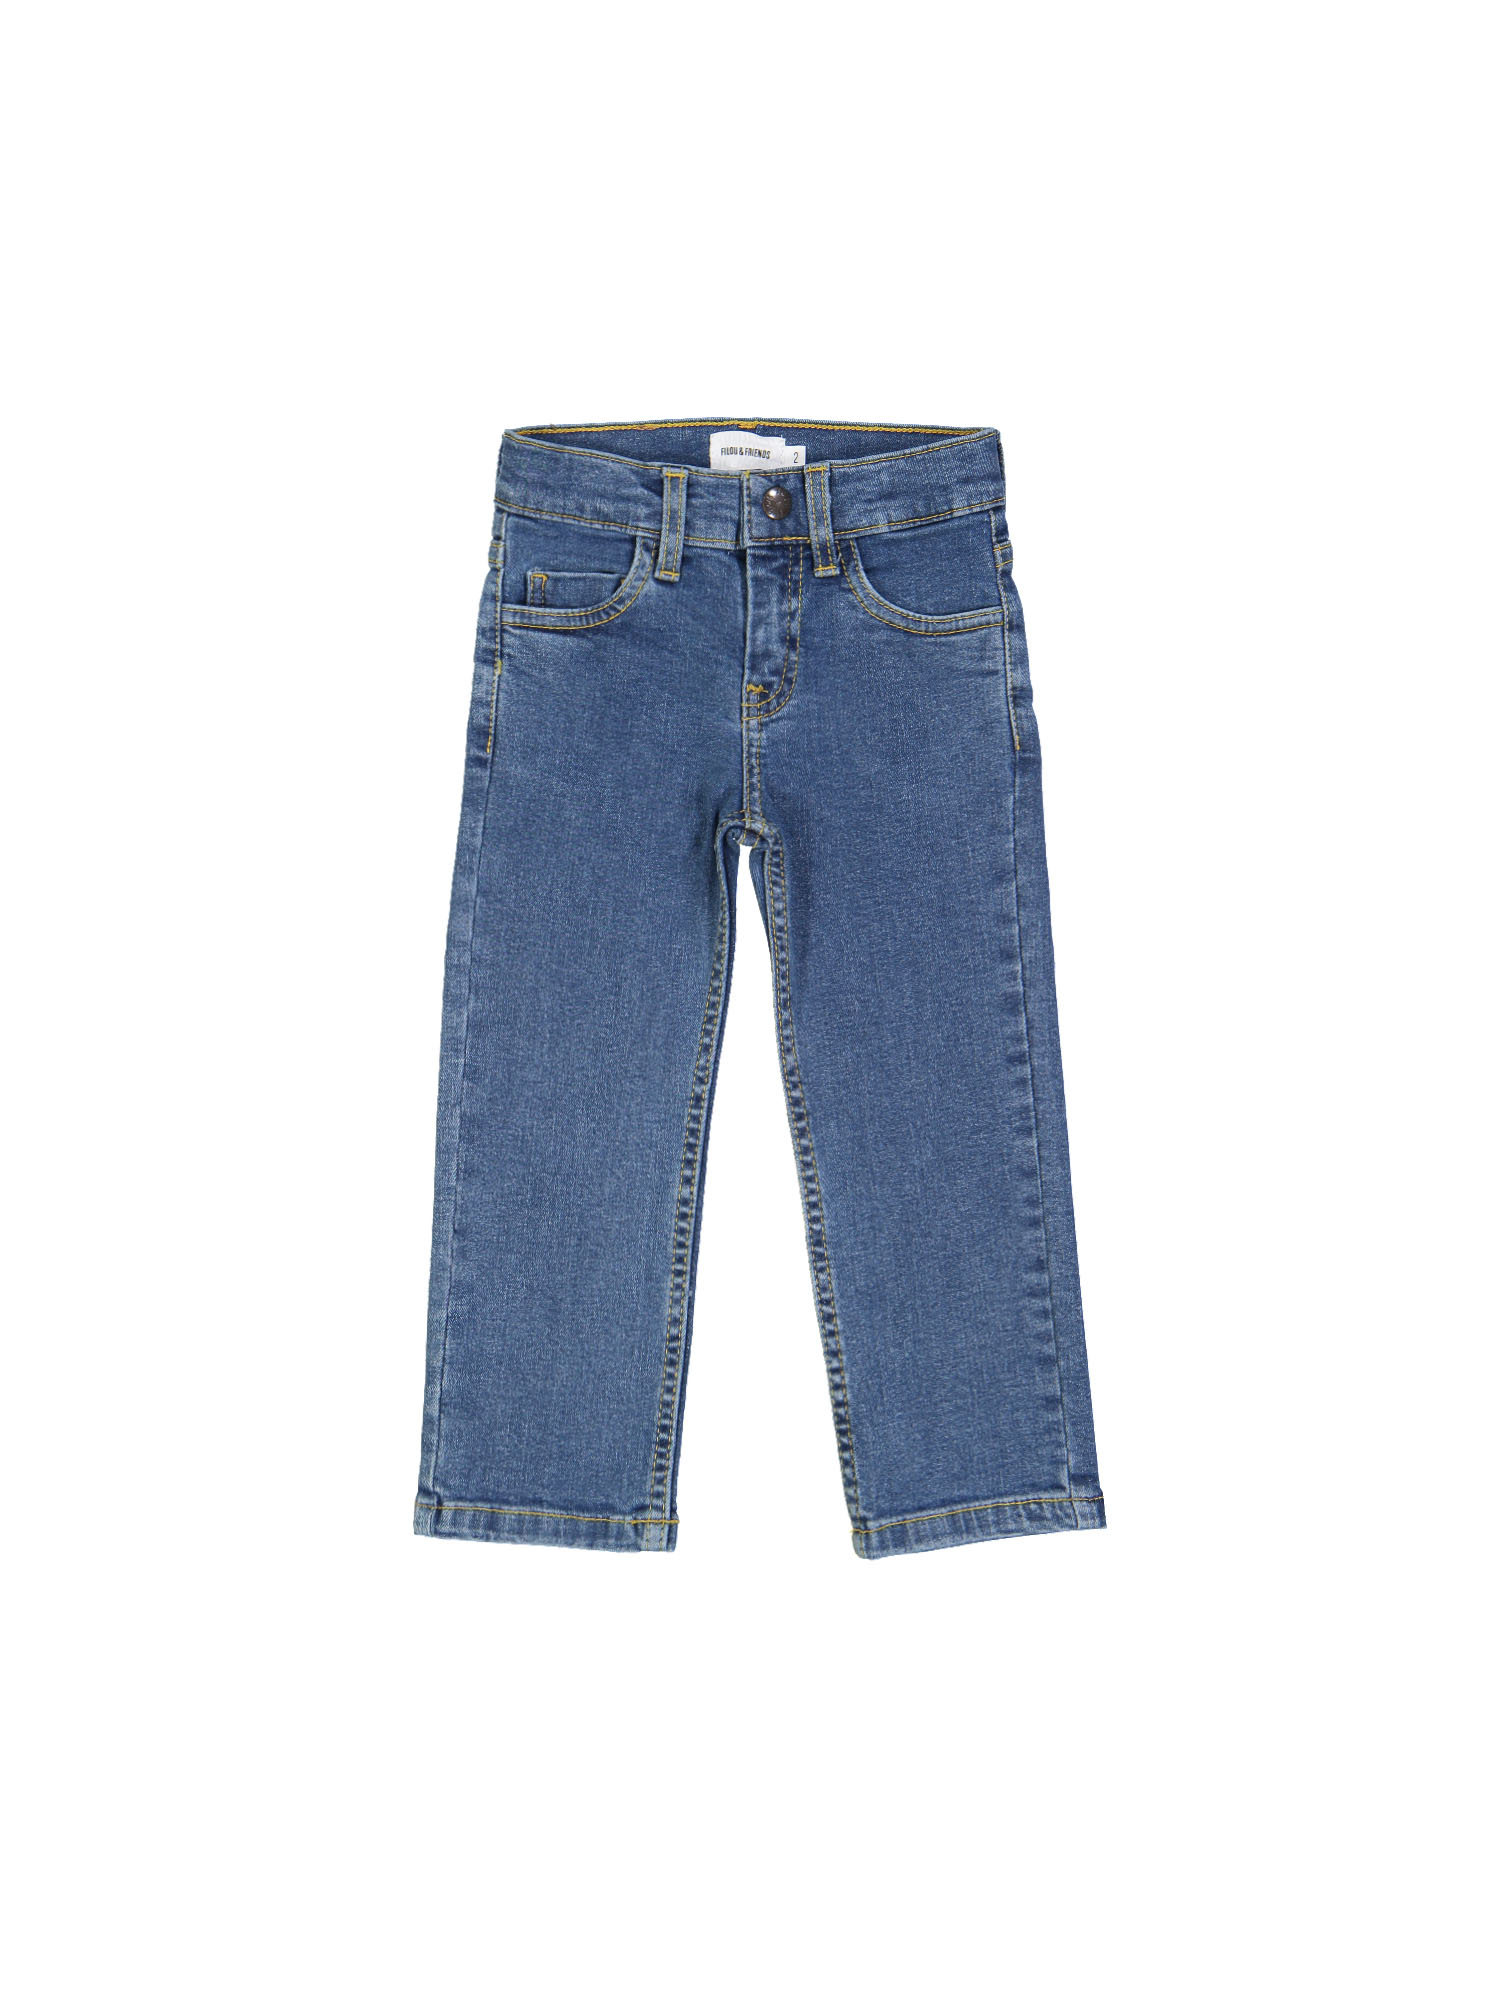 jeans regular bleach blauw rits 10j